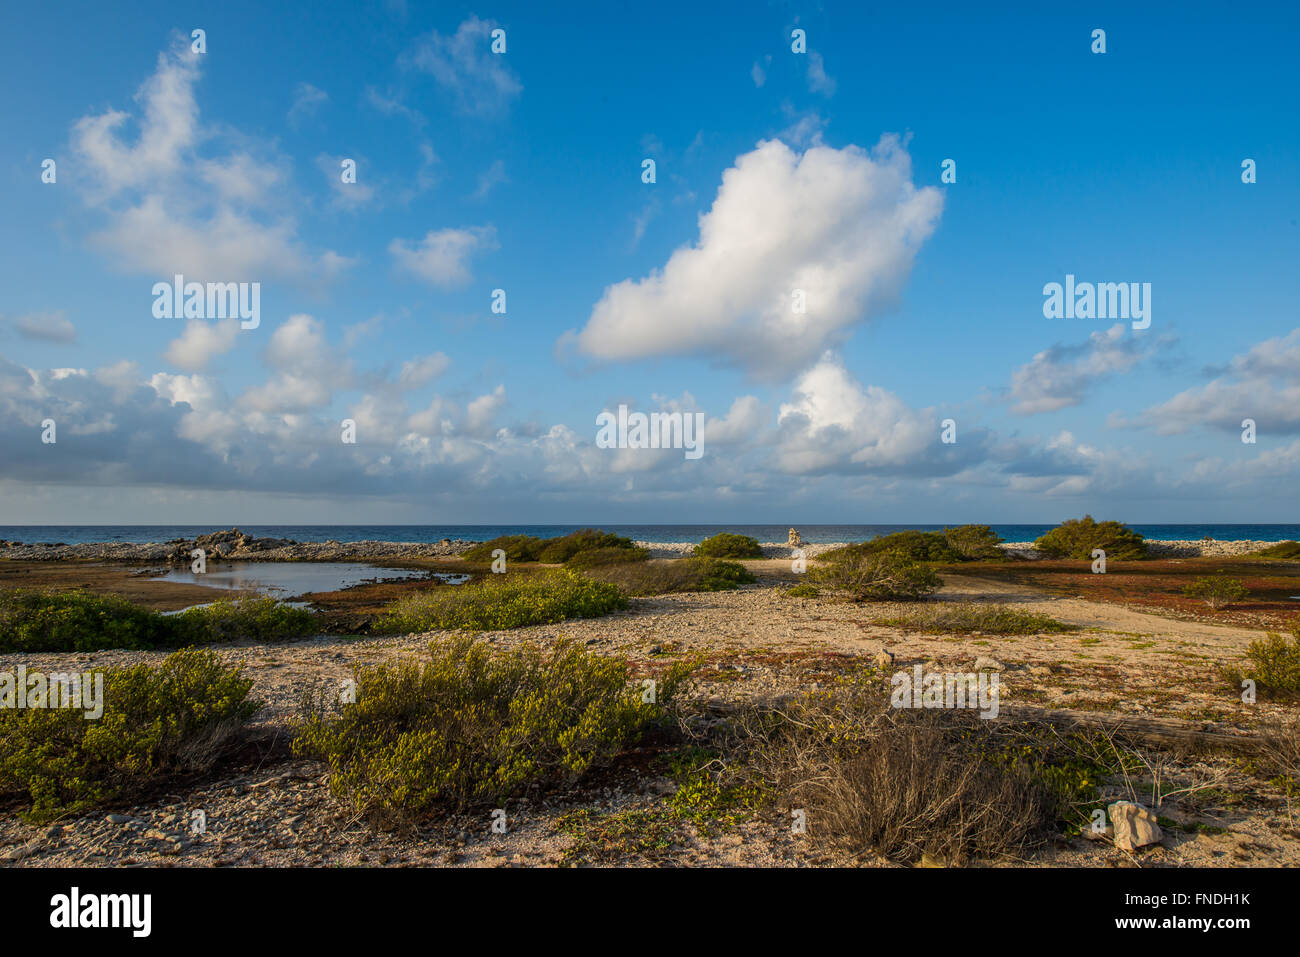 Belle vue sur les plages et la mer des Caraïbes de Bonaire avec le soleil sining derrière les nuages. Banque D'Images